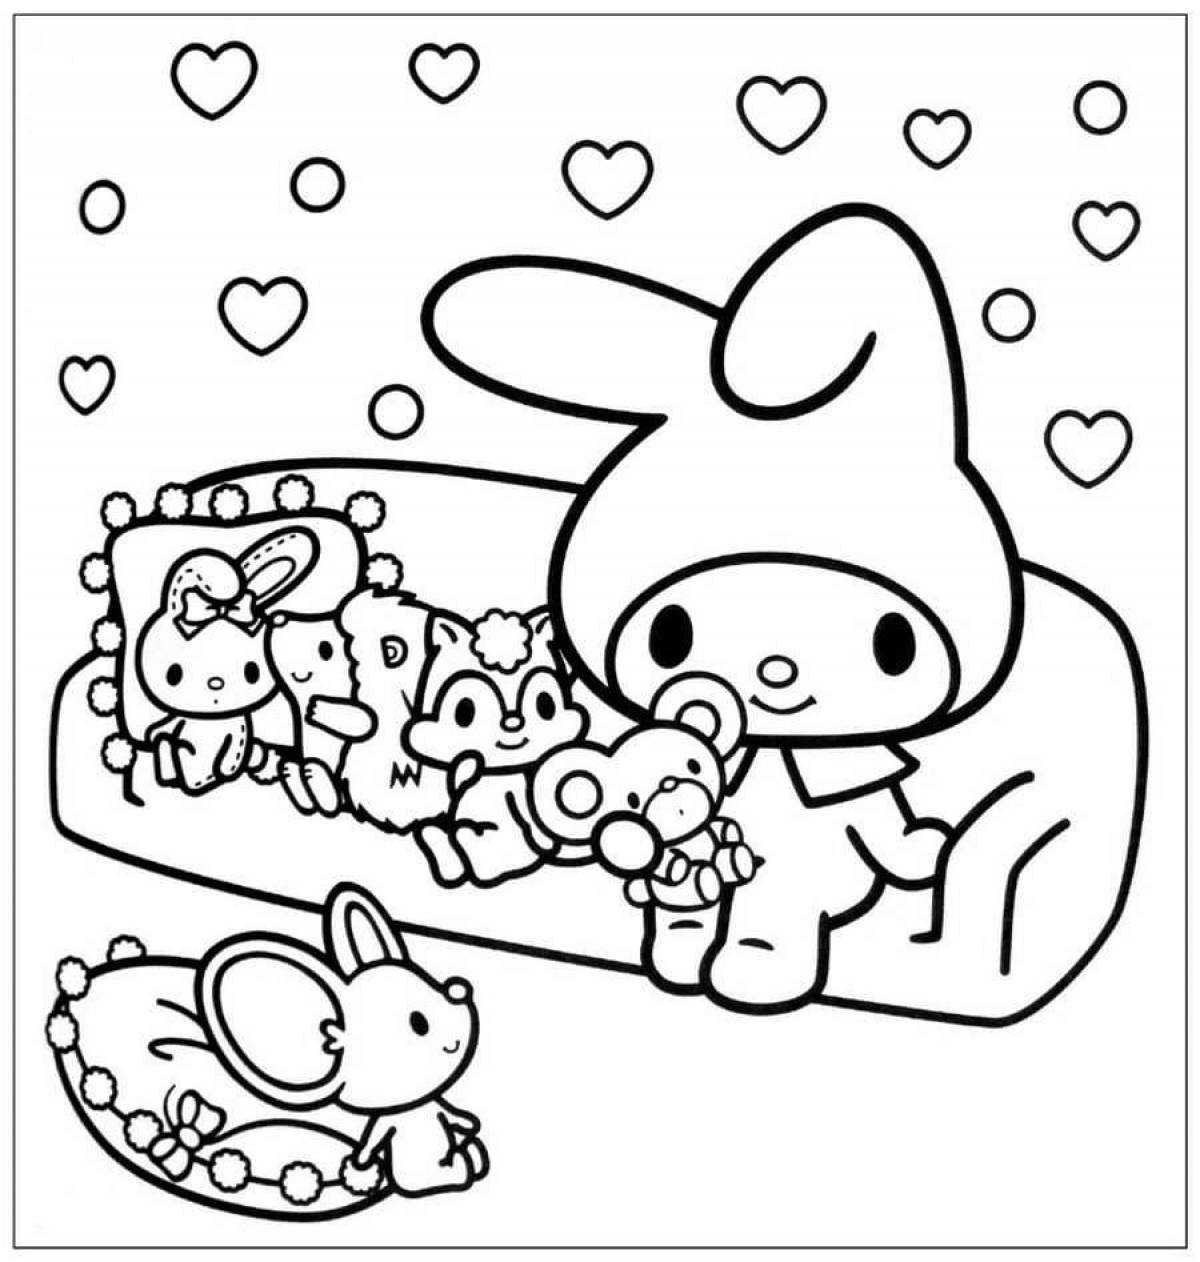 Праздничная майская мелодия hello kitty coloring page